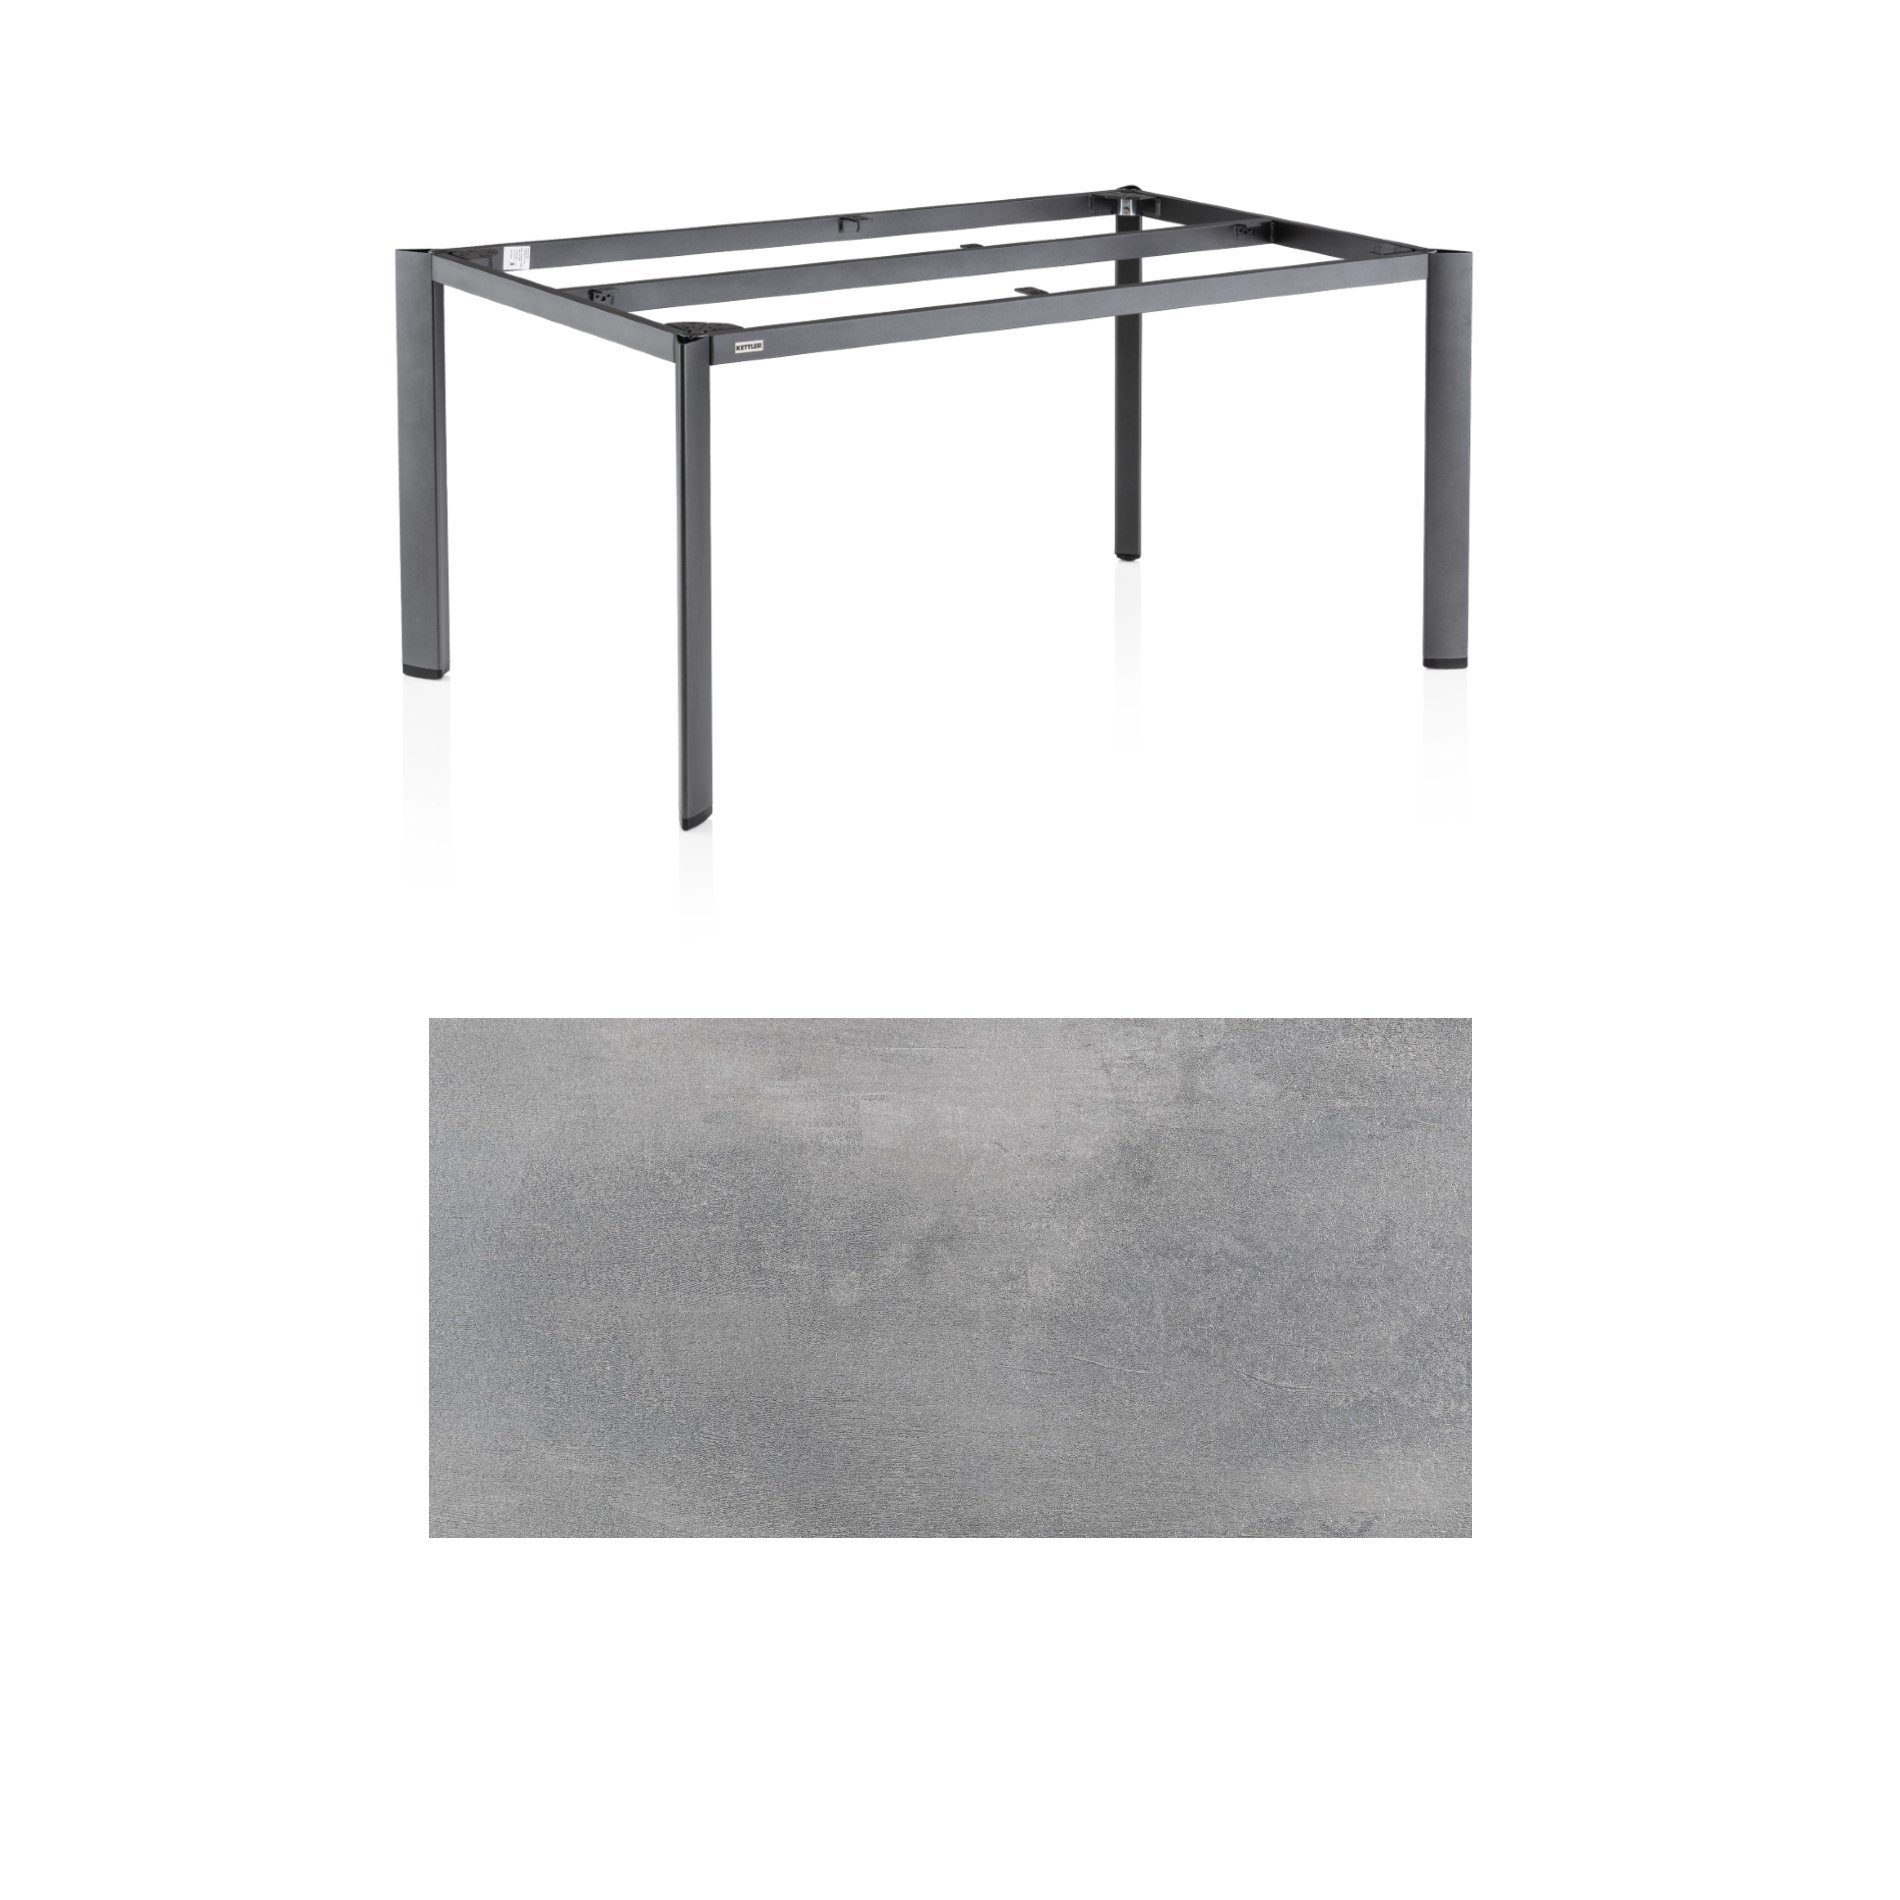 Kettler "Edge" Gartentisch, Gestell Aluminium anthrazit, Tischplatte HPL silber-grau, 160x95 cm